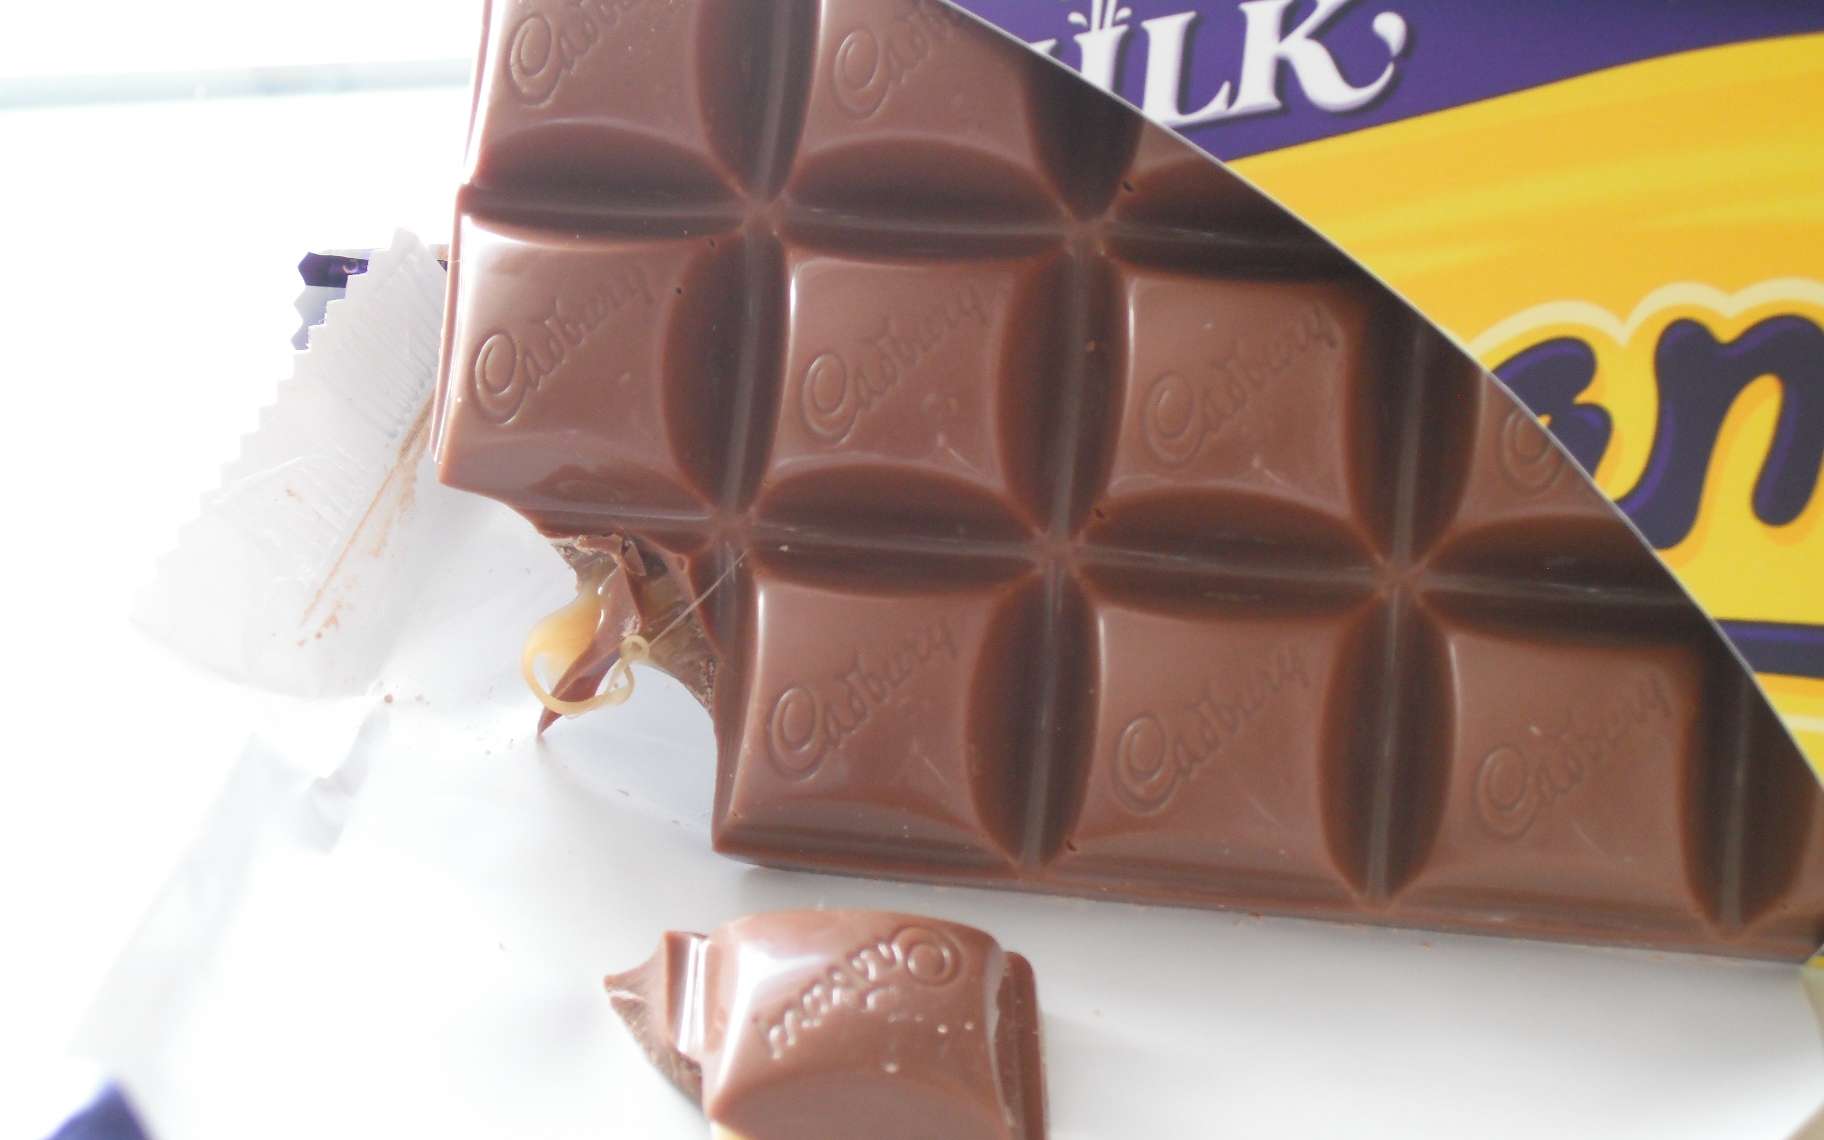 Le chocolat britannique Dairy Milk a récemment changé de forme. Et de goût ? Les consommateurs s'en plaignent, alors que la recette est inchangée. Et ils ont raison ! © Jon-Boys, deviantart.com, cc by 3.0